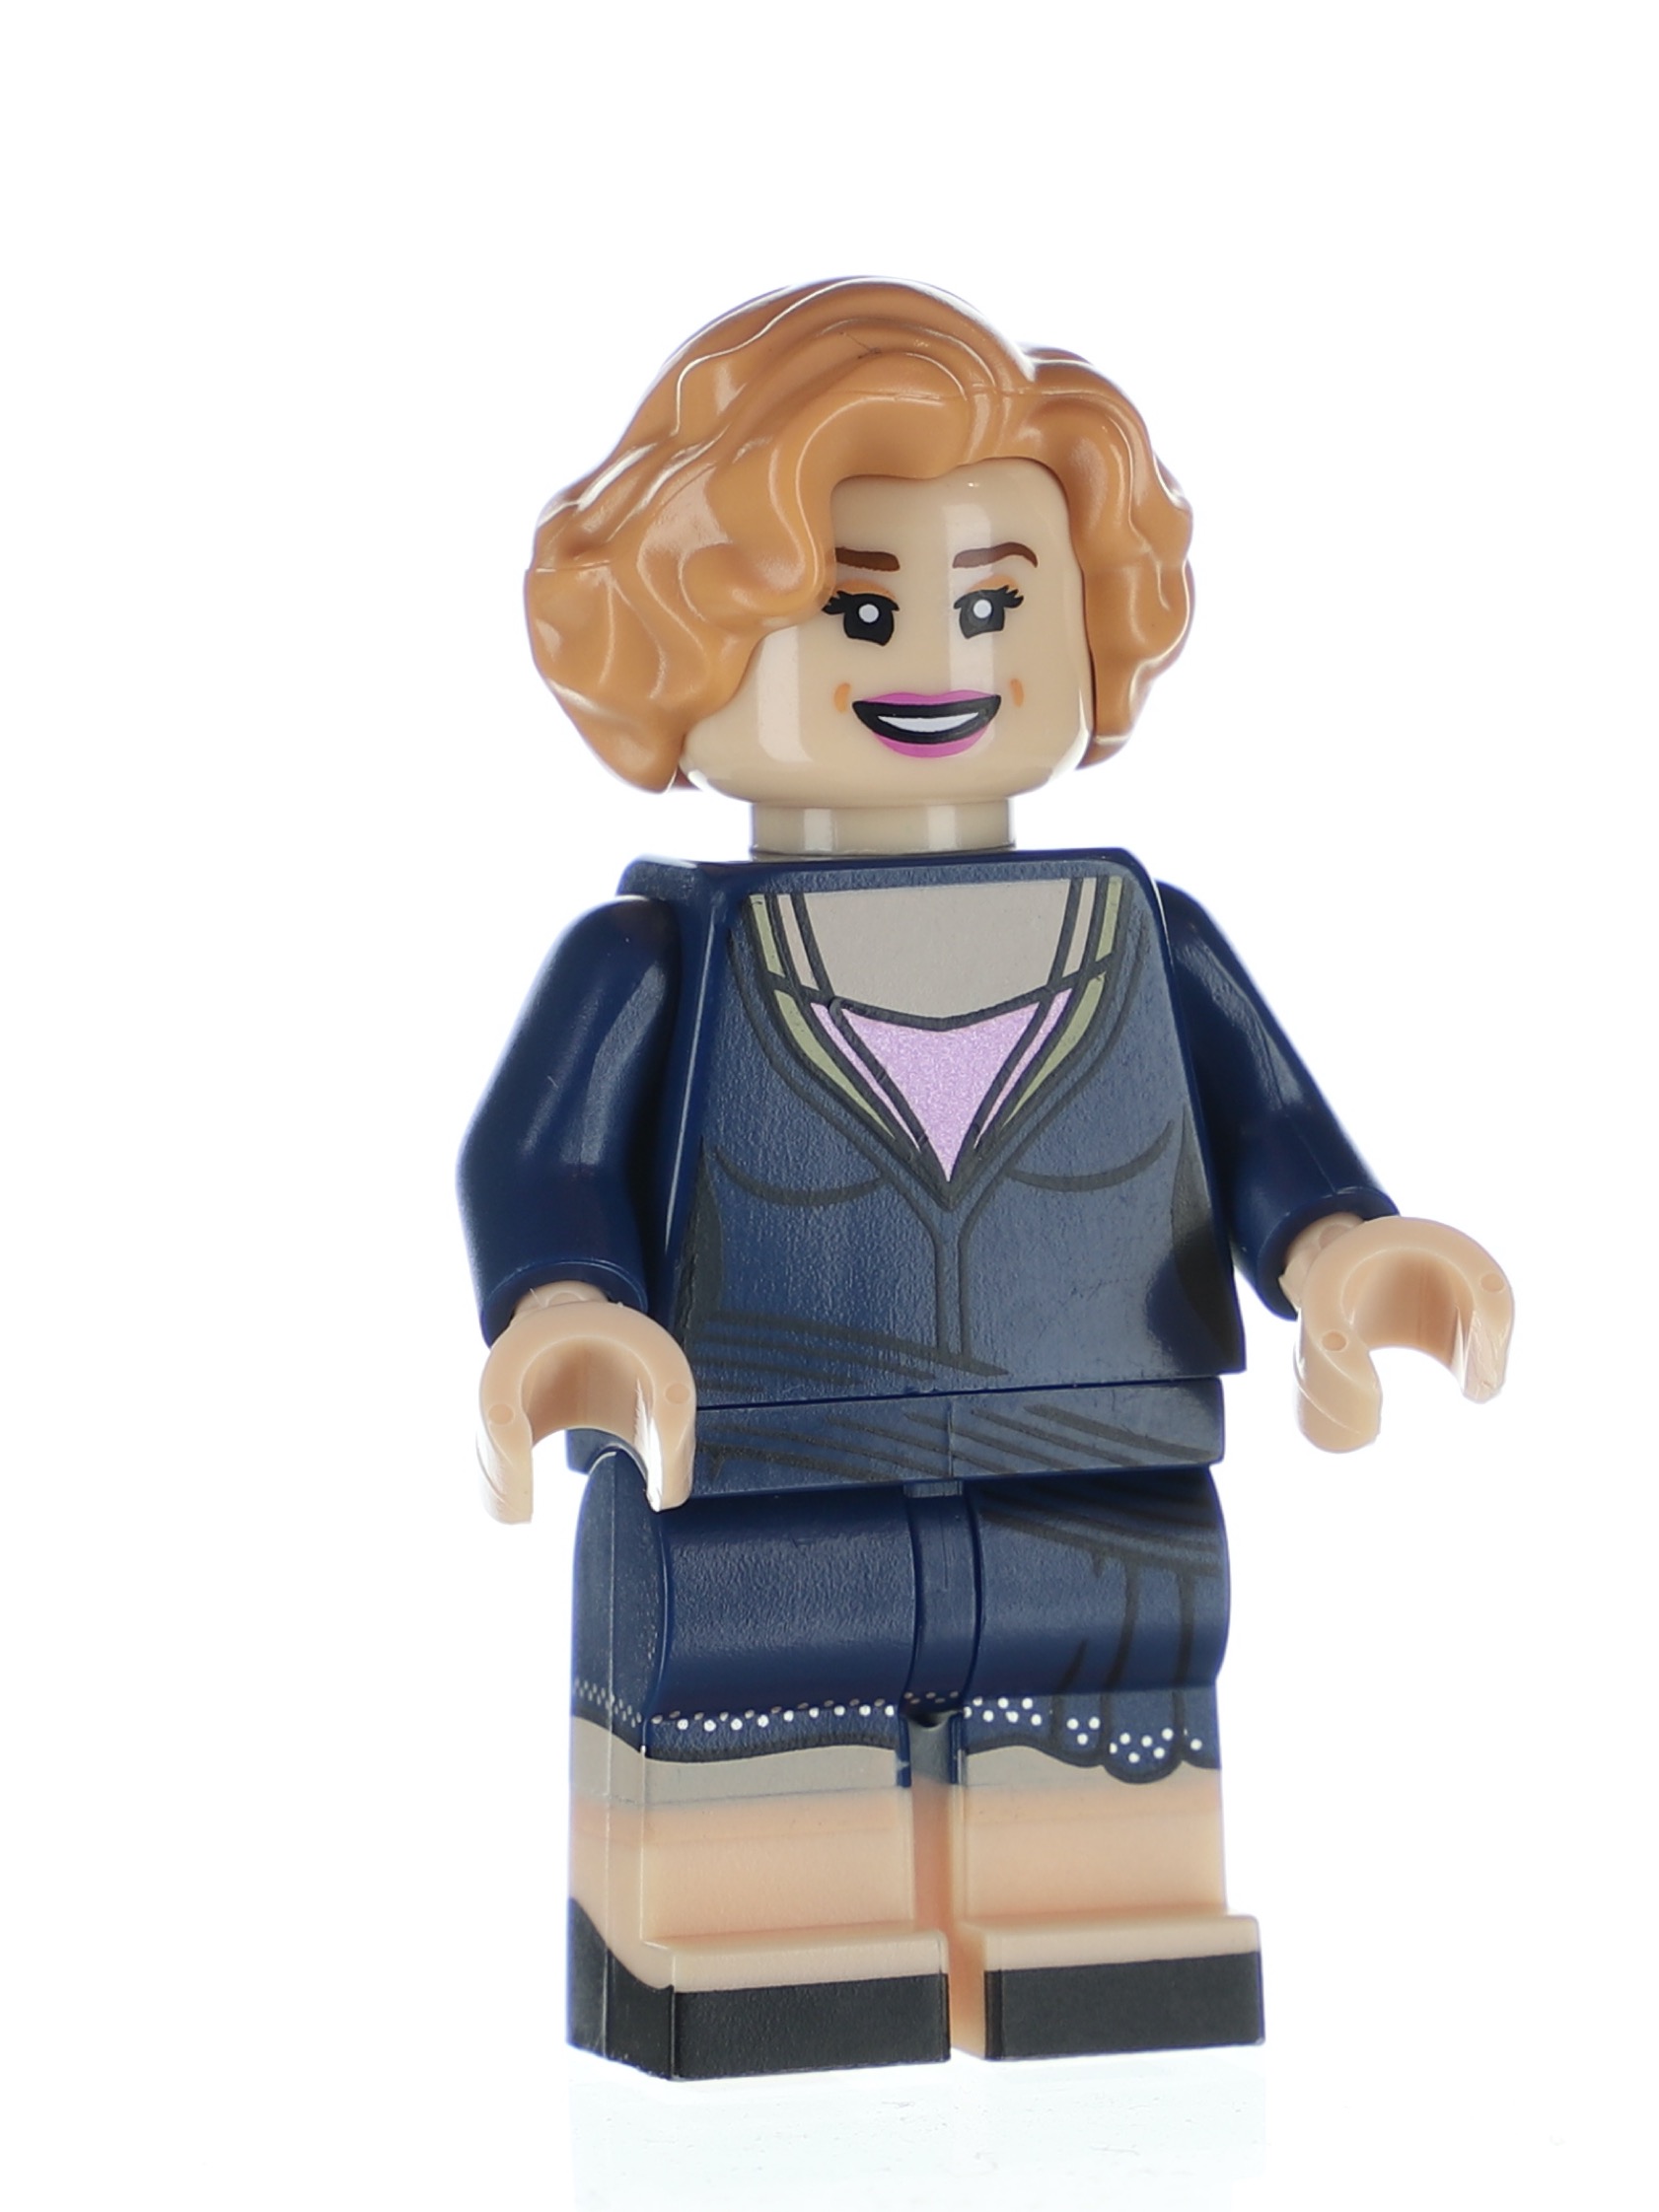 Lego Harry Potter Fantastic Beasts minifigures 71022 20 - Queenie Goldstein